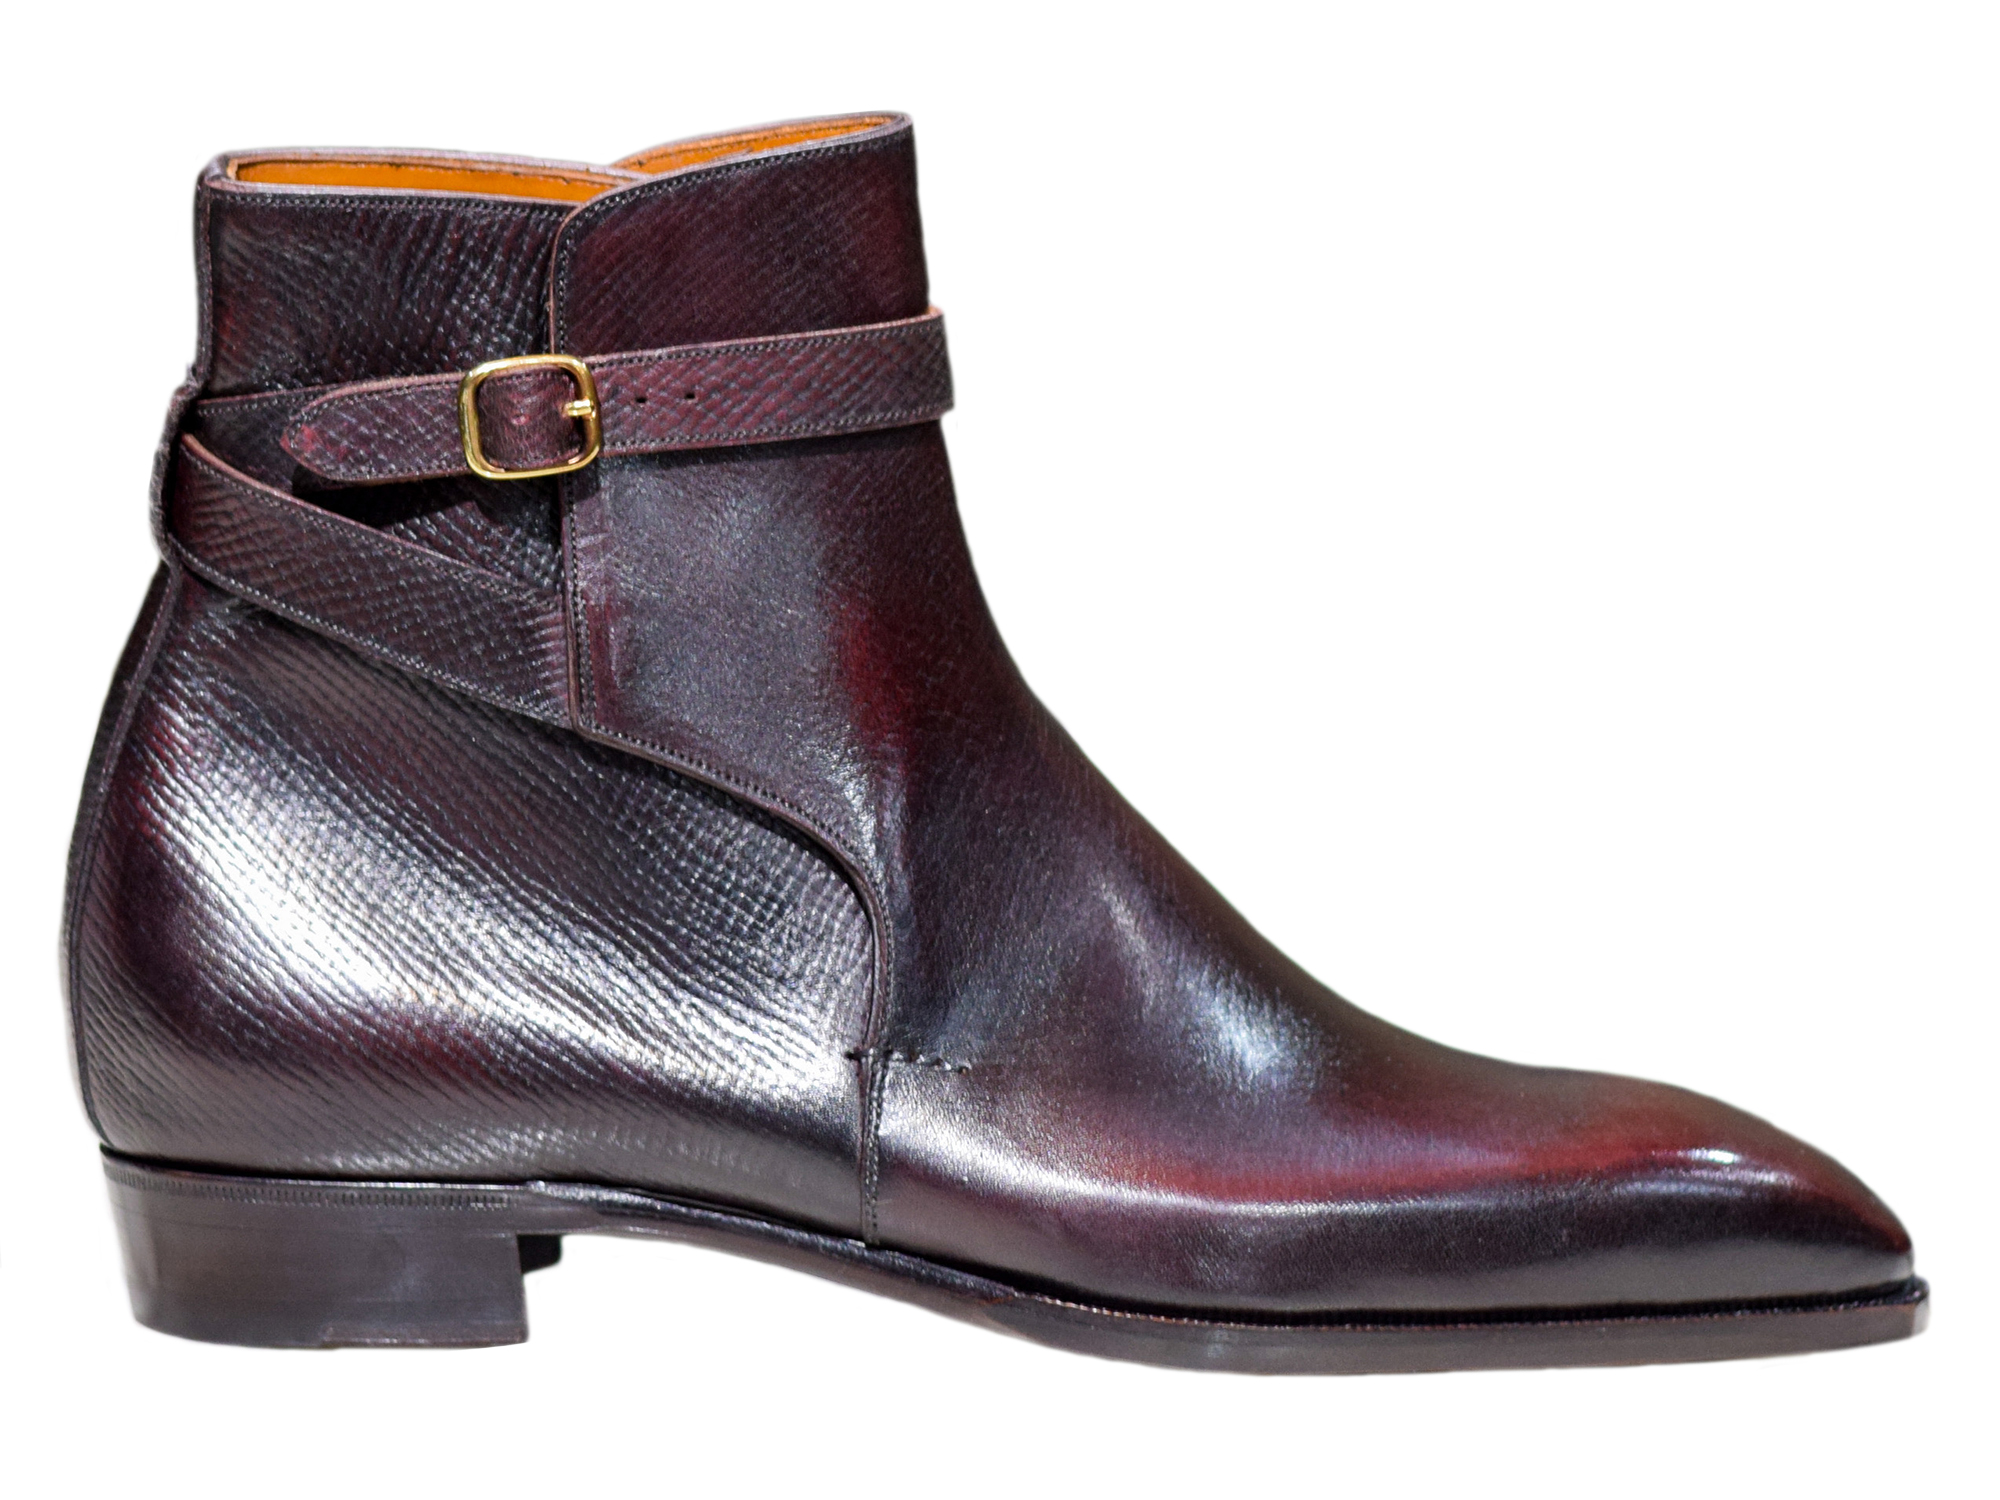 MTO Jodhpur boots - Hatchgrain leather